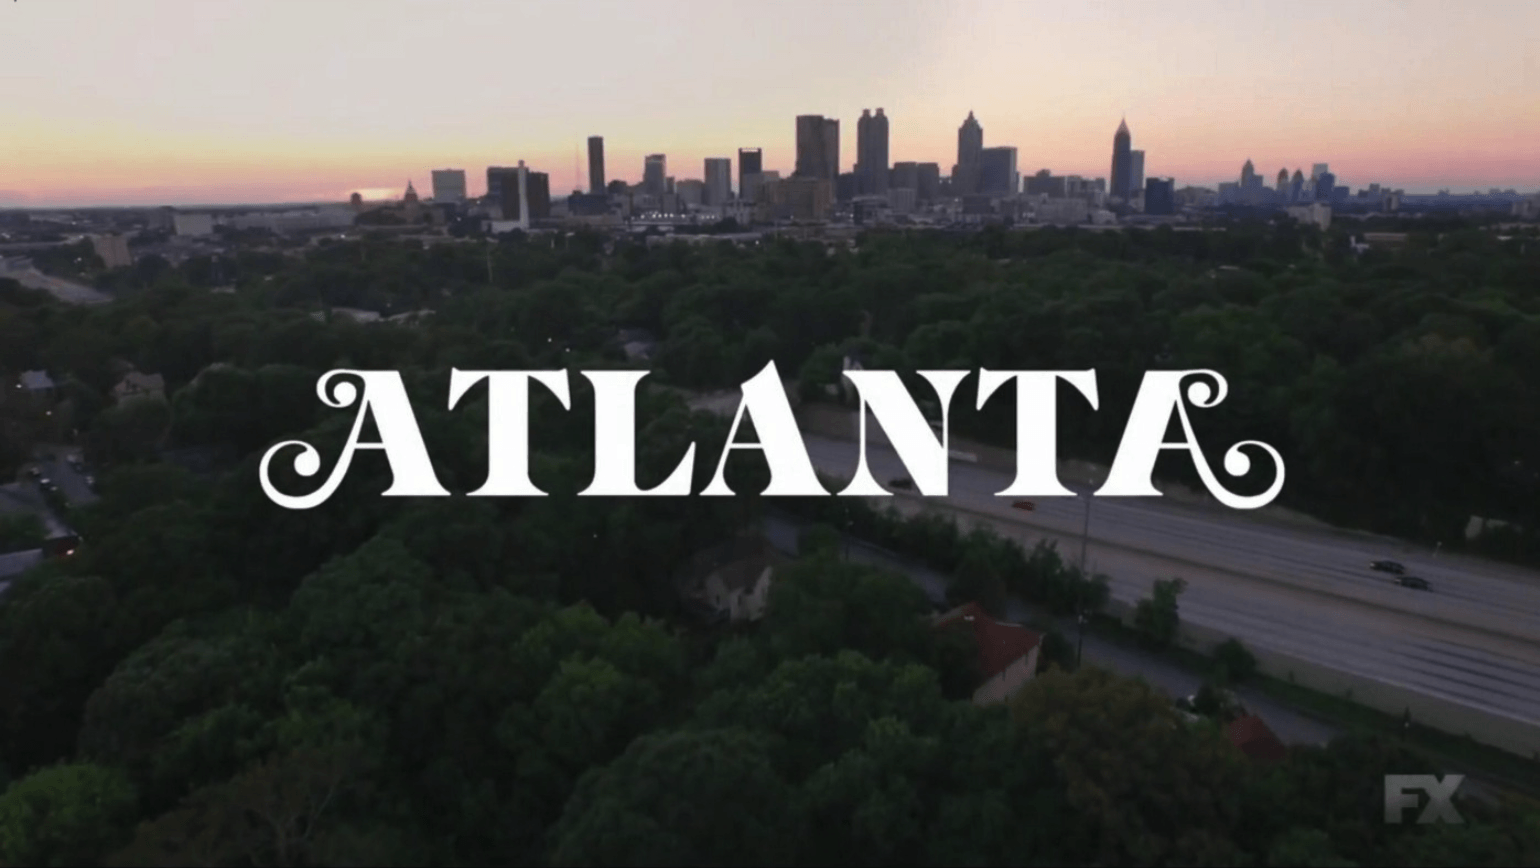 Atlanta Logo - Atlanta (FX Series) logo and opening titles - Fonts In Use